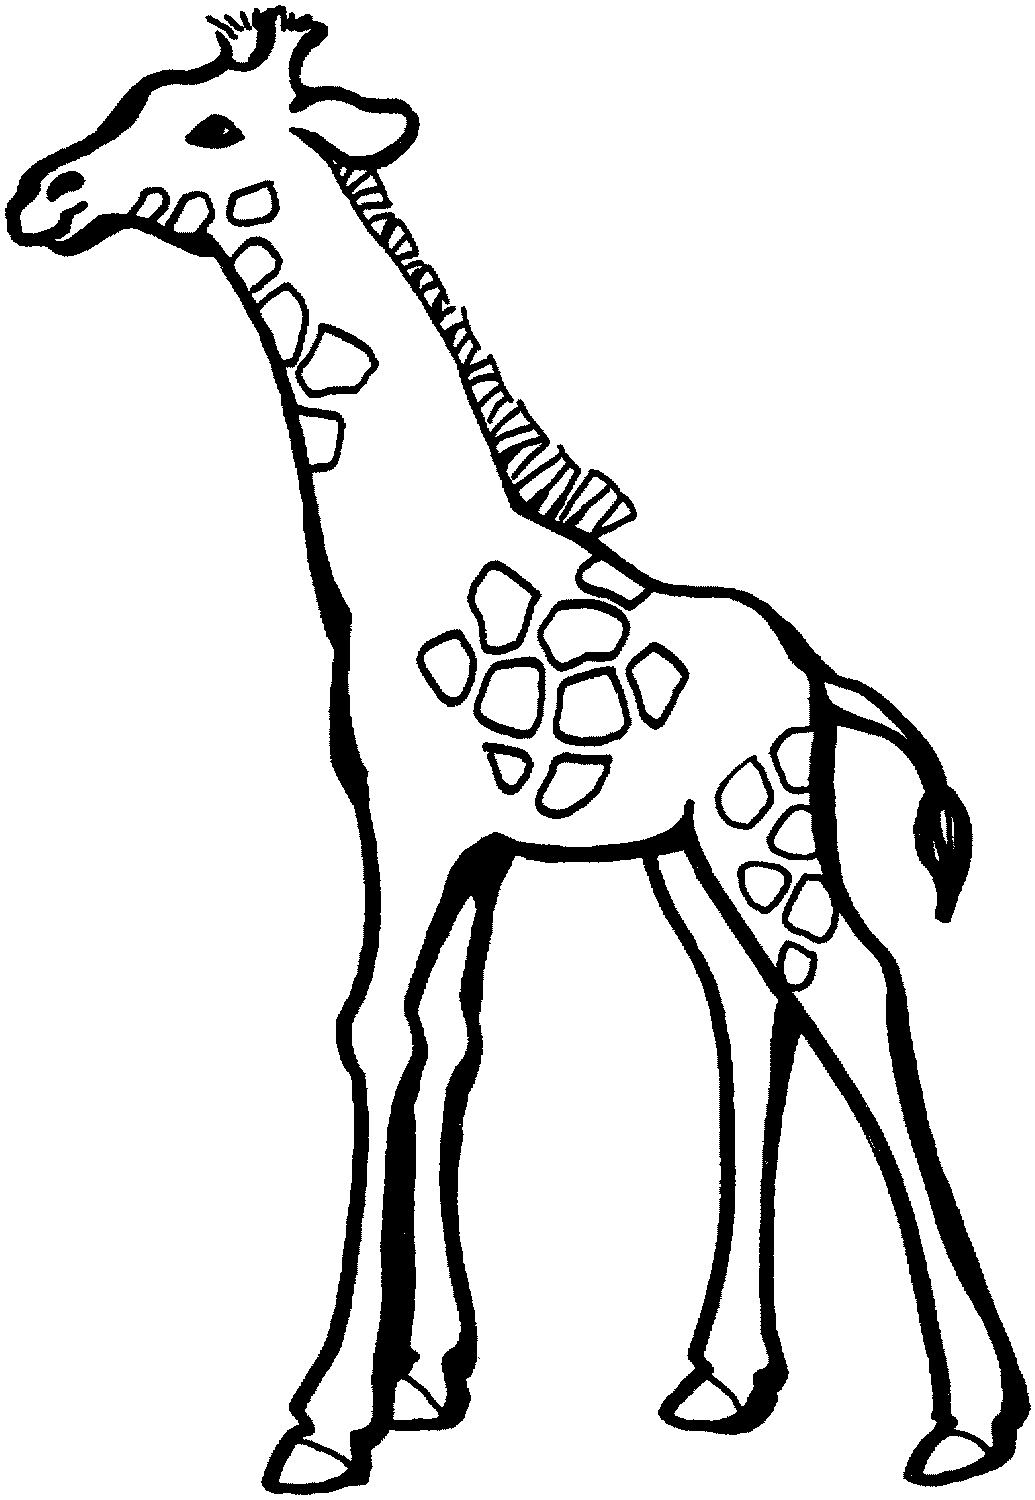 Drawn Giraffe - ClipArt Best